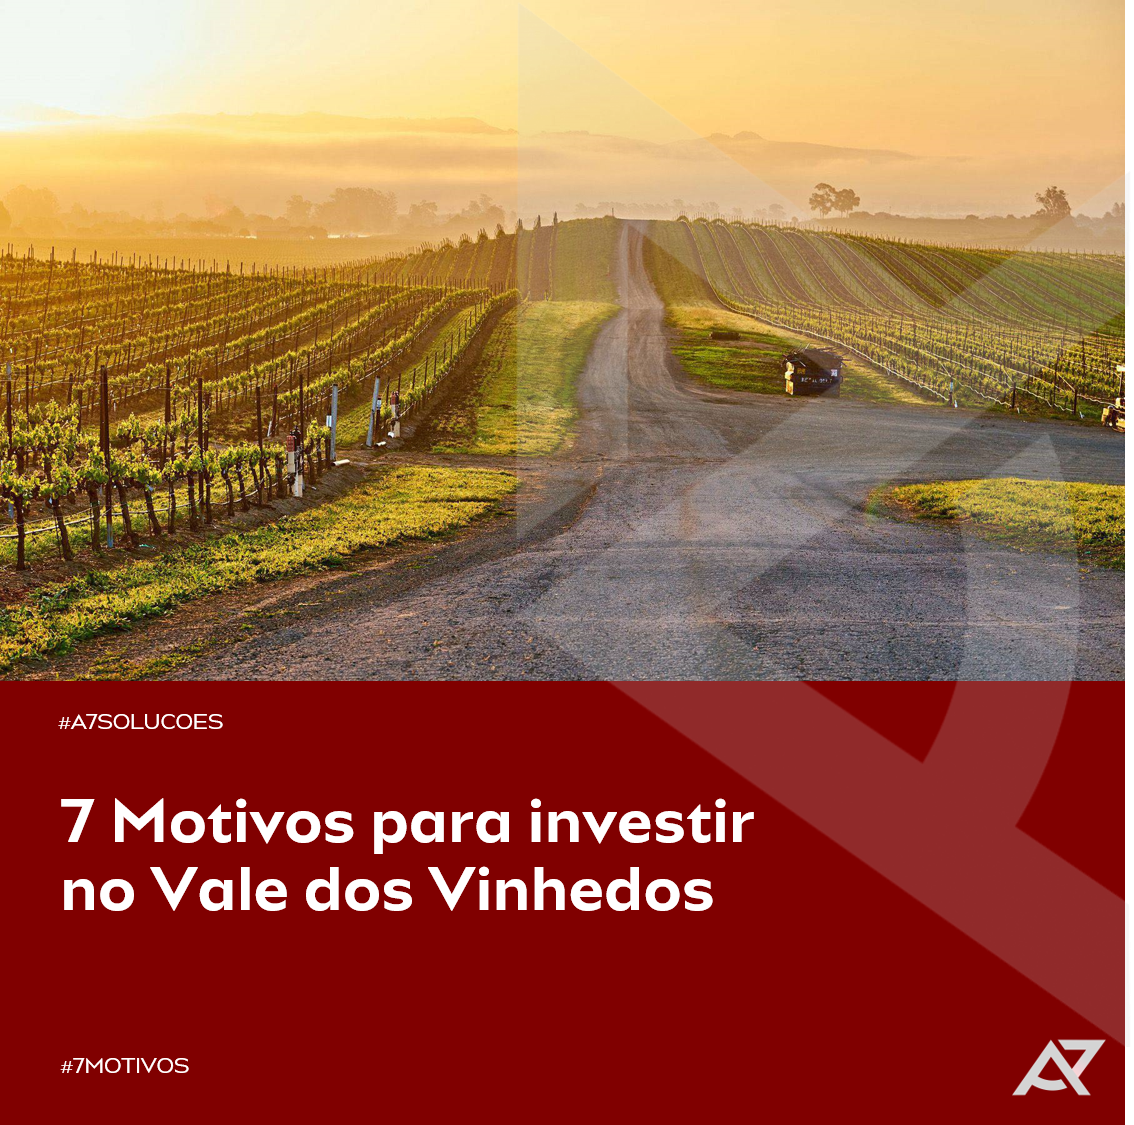 You are currently viewing 7 Motivos para Investir no Vale dos Vinhedos